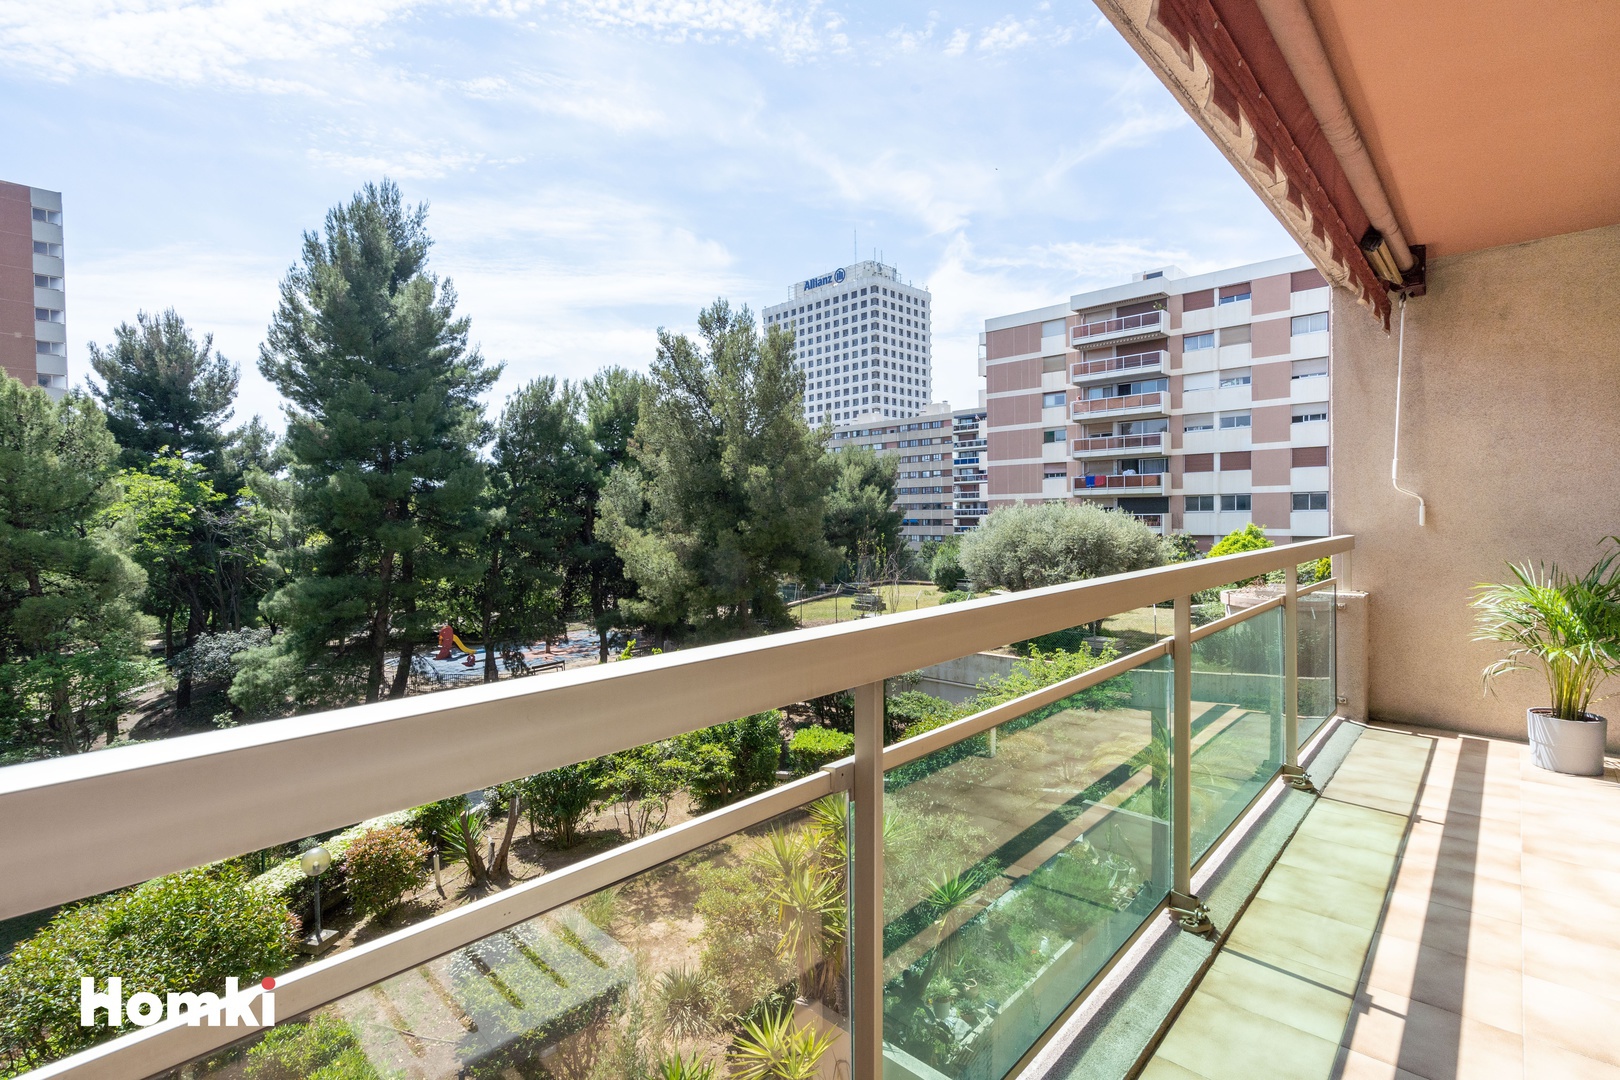 Homki - Vente Appartement  de 89.0 m² à Marseille 13006